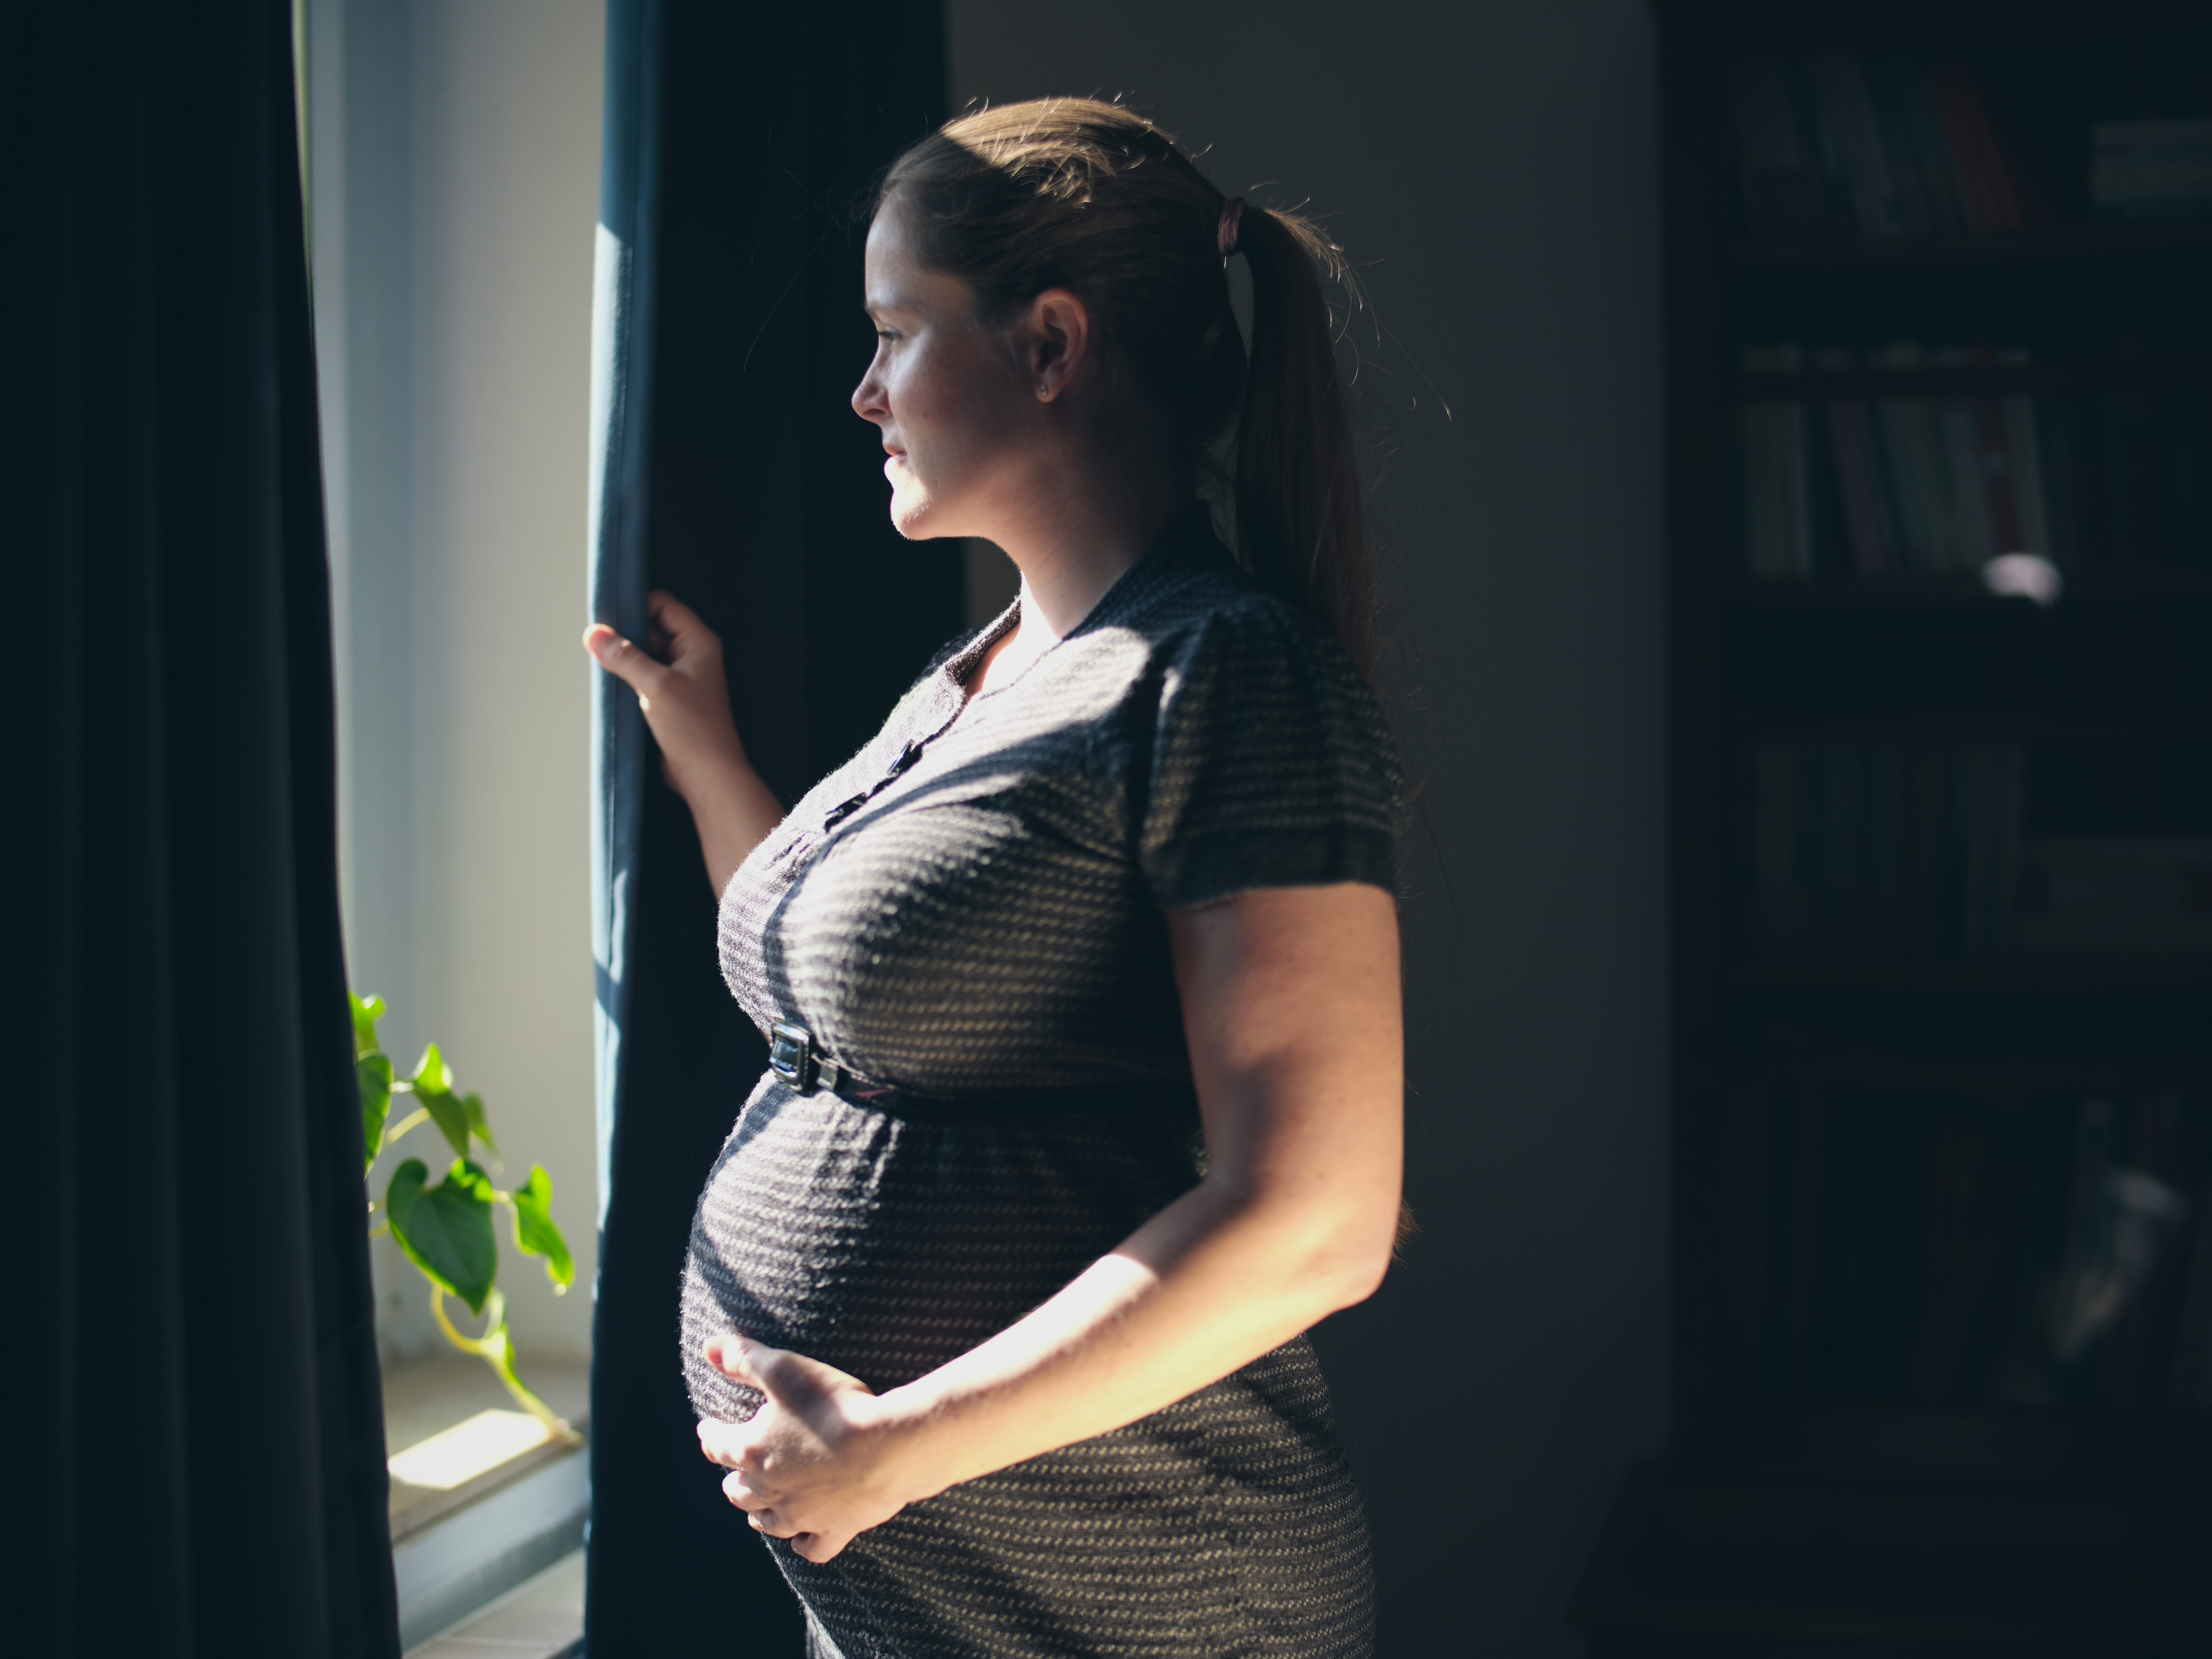 Une femme enceinte regardant par la fenêtre | Source : Shutterstock